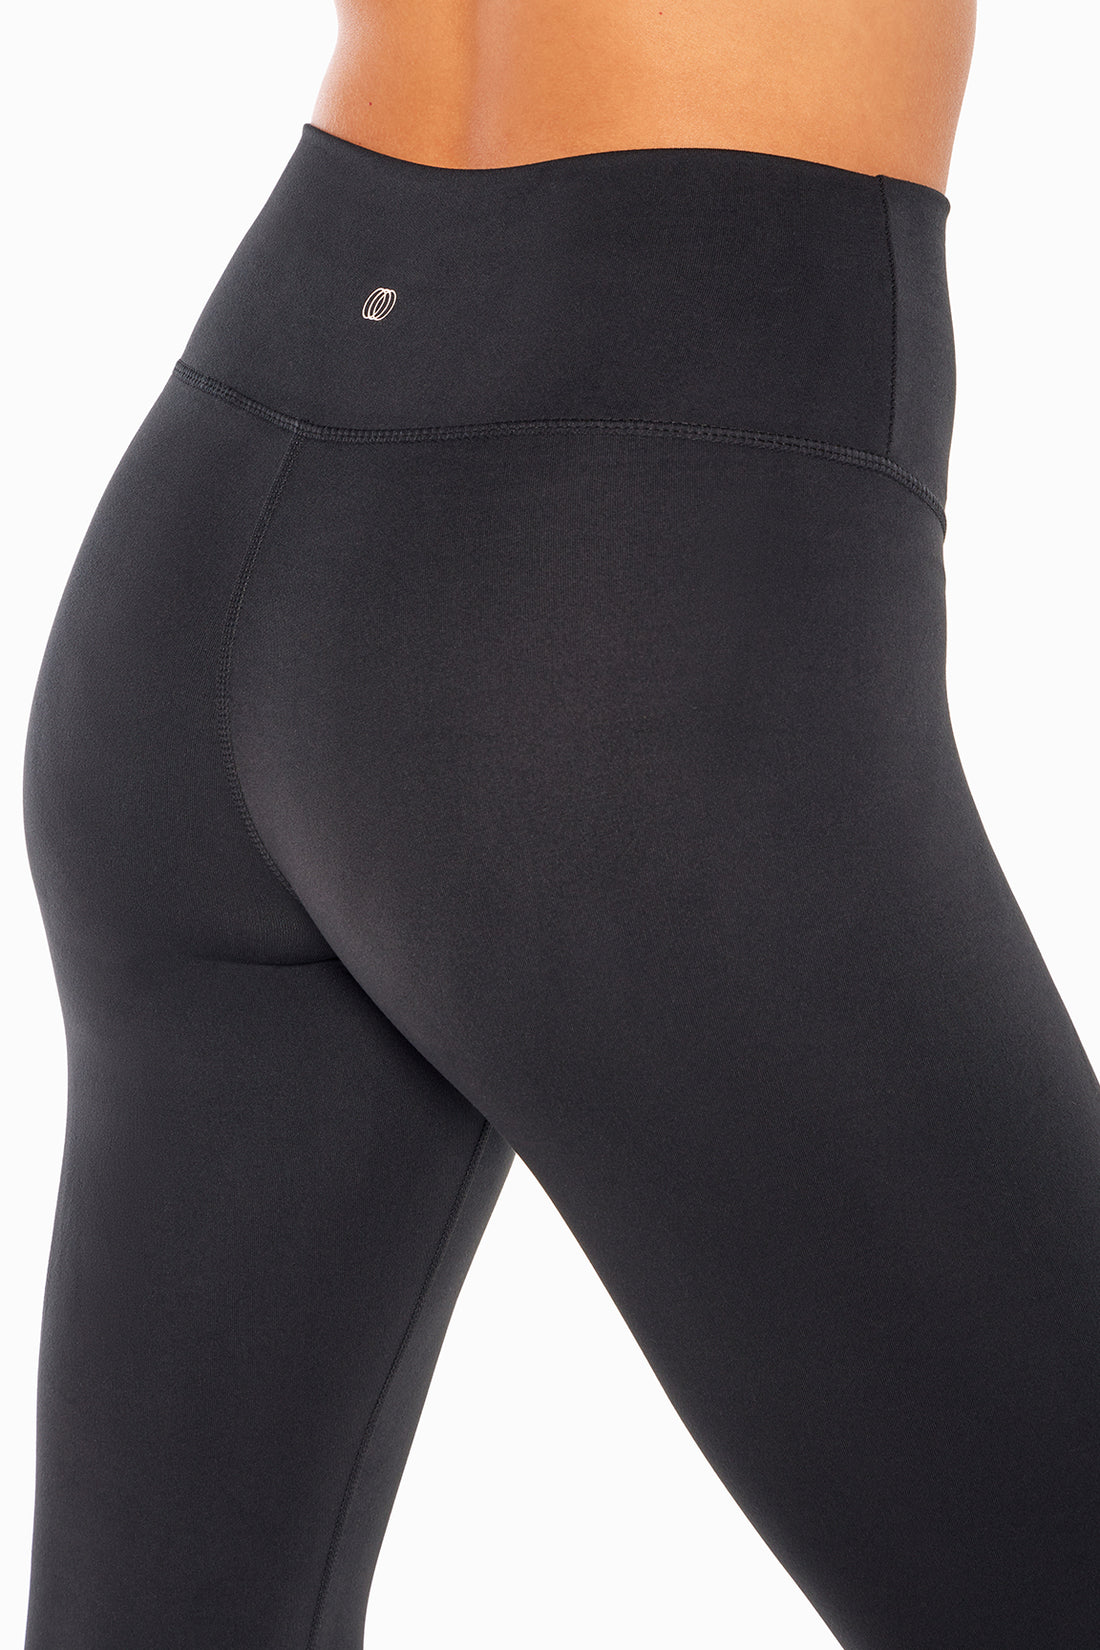 Side pocket leggings by Marika. Size XL. Brand new - Depop